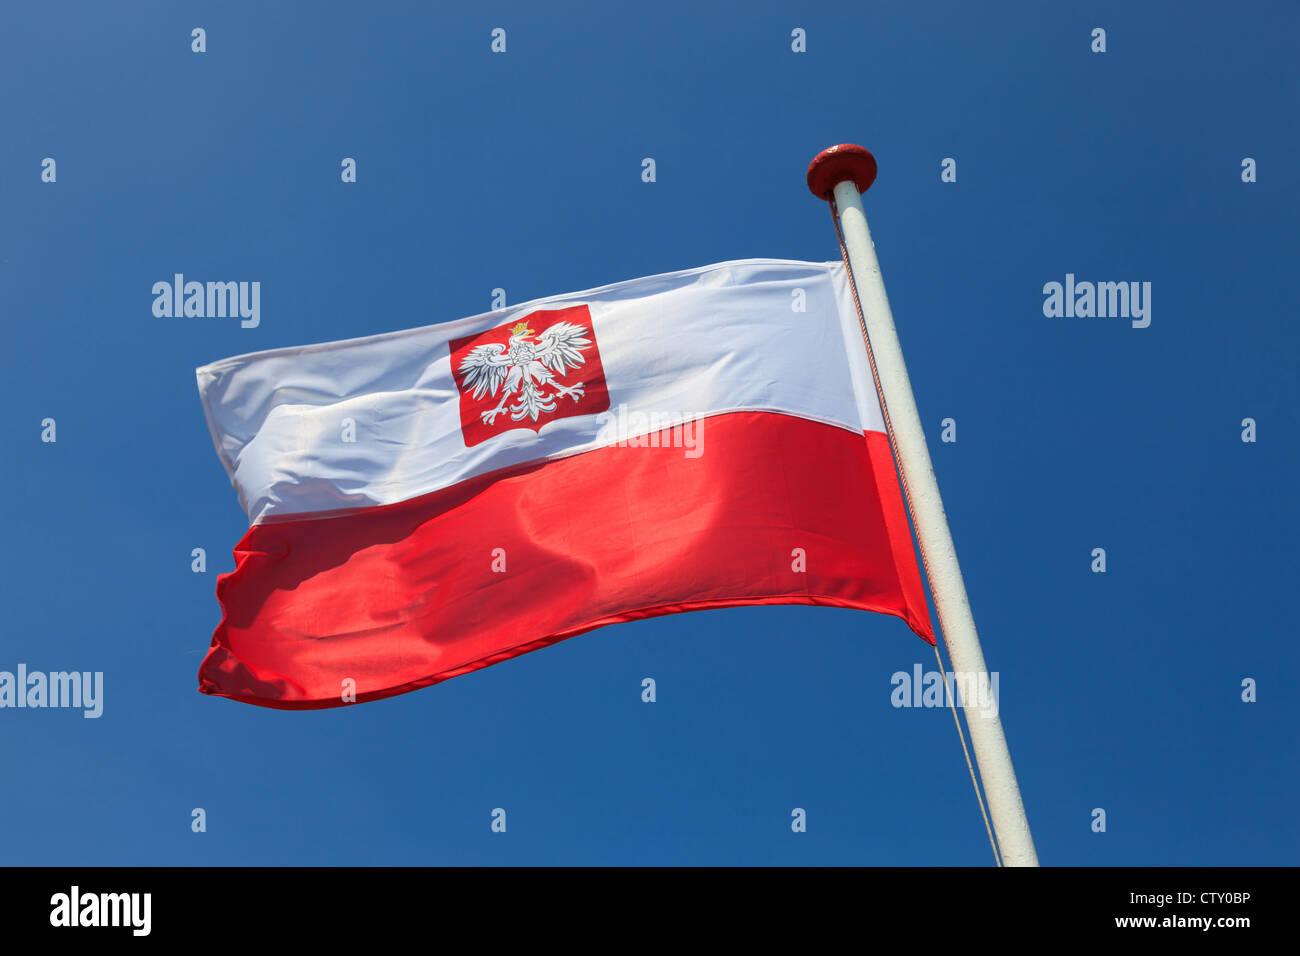 Bandera nacional polaca en el cielo. Foto de stock